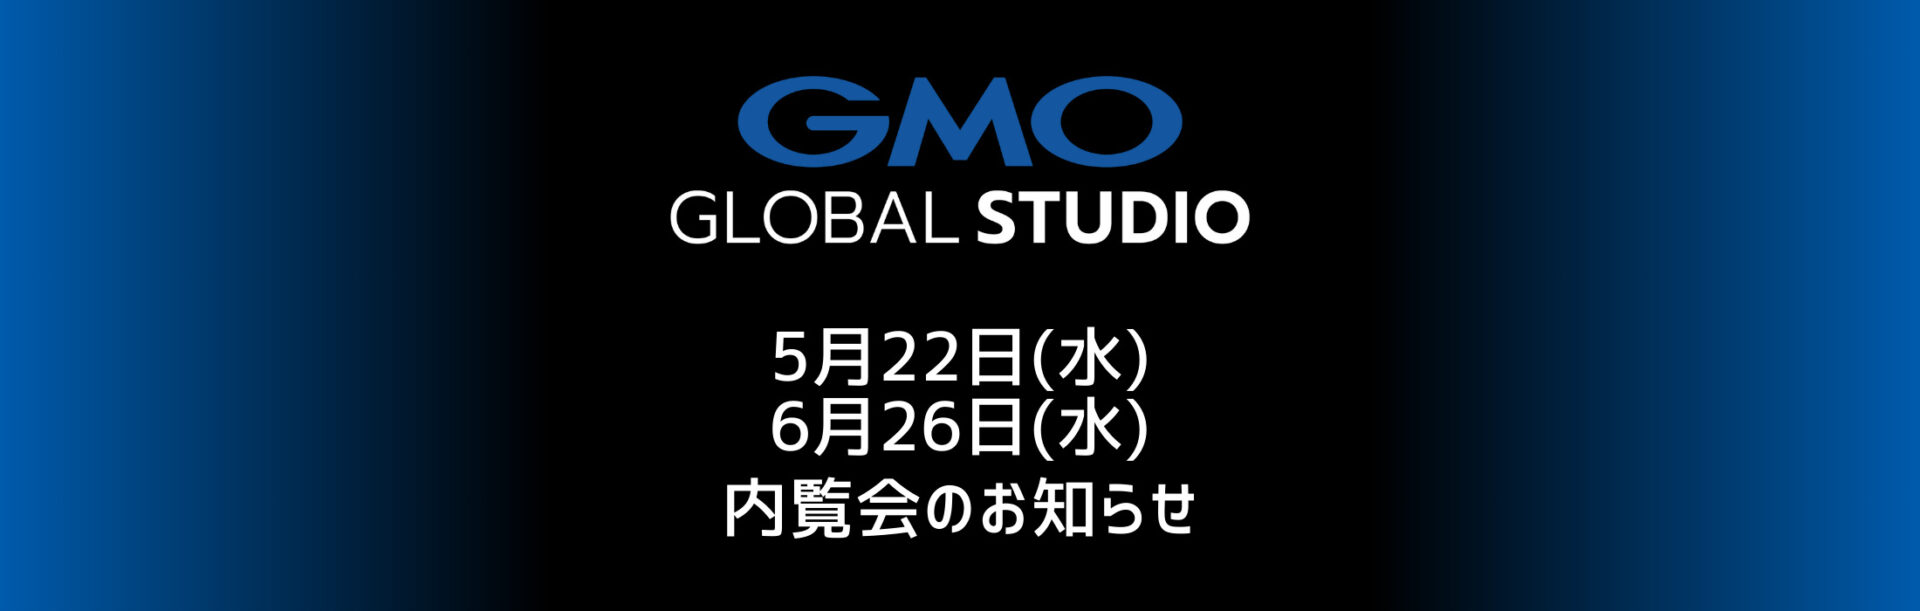 GMOグローバルスタジオ 内覧会 5月22日(水)・6月26日(水)